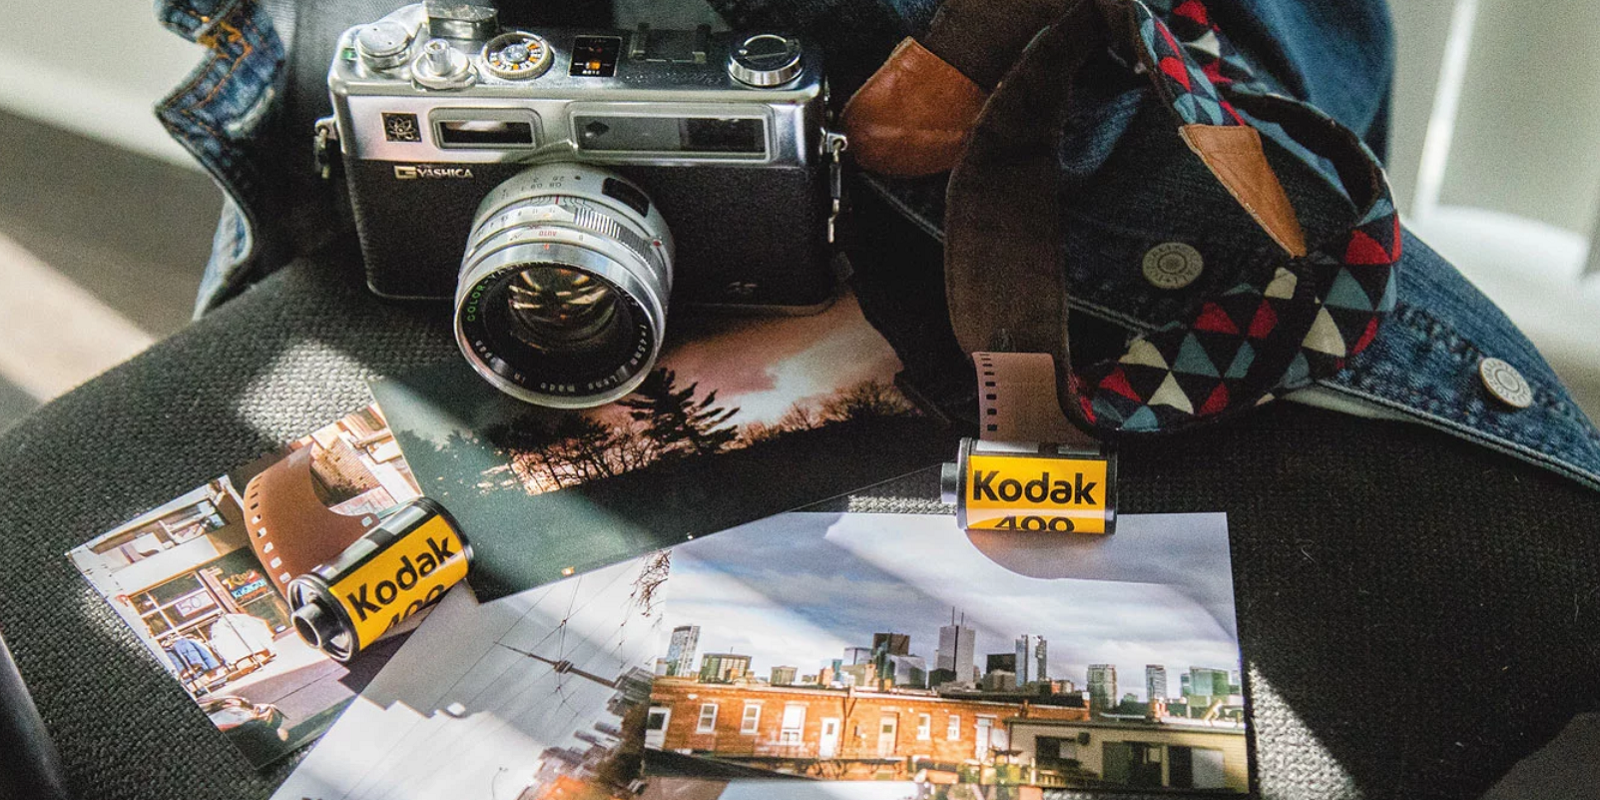 KODAK, la marca líder que pudo haber tenido el imperio de cámaras digitales